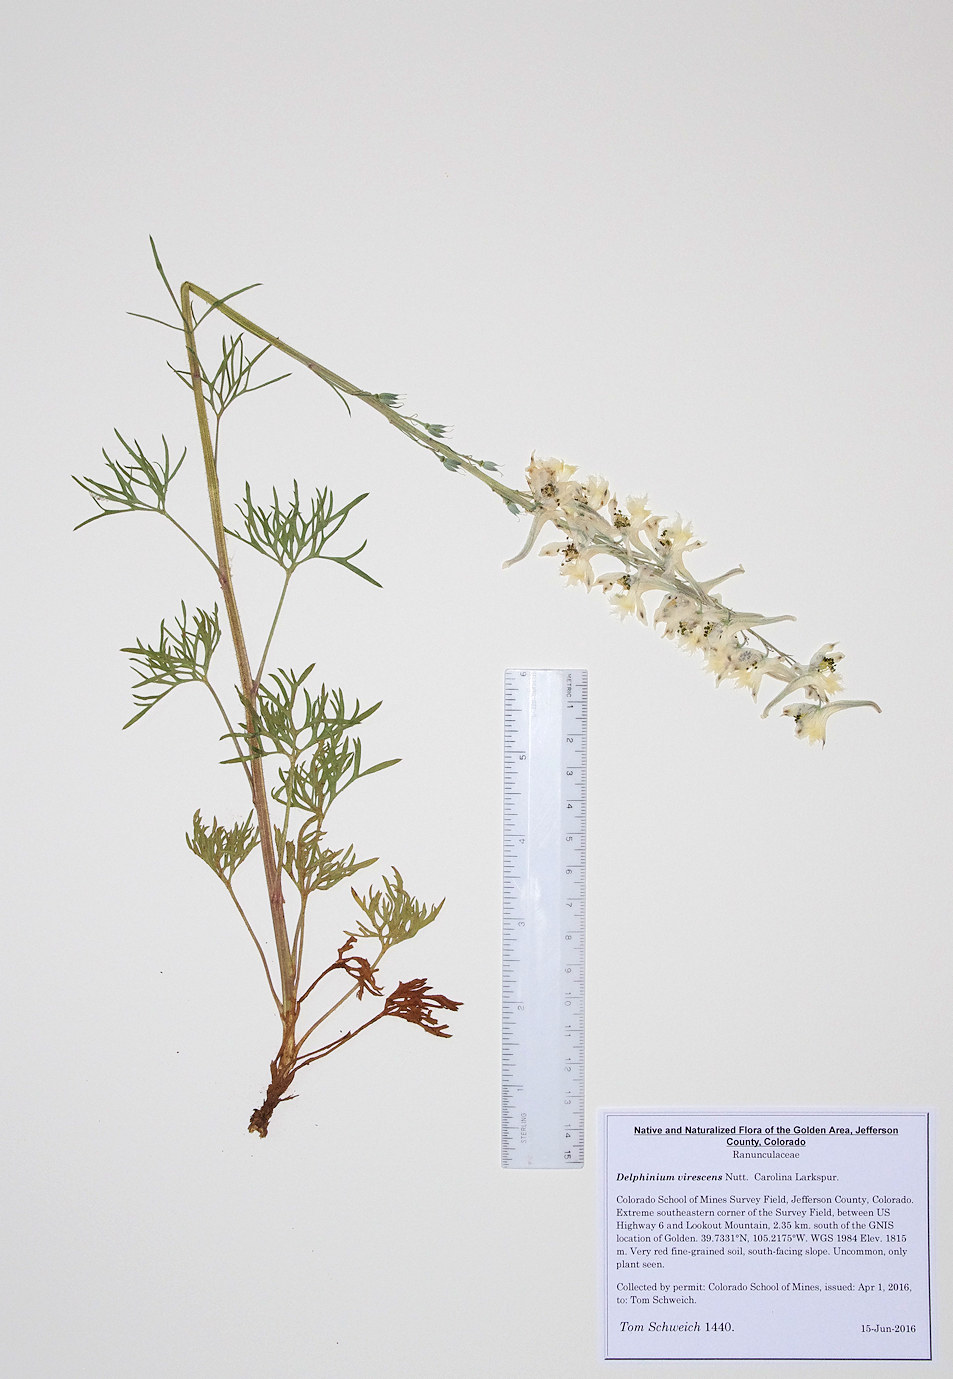 Ranunculaceae Delphinium carolinianum virescens